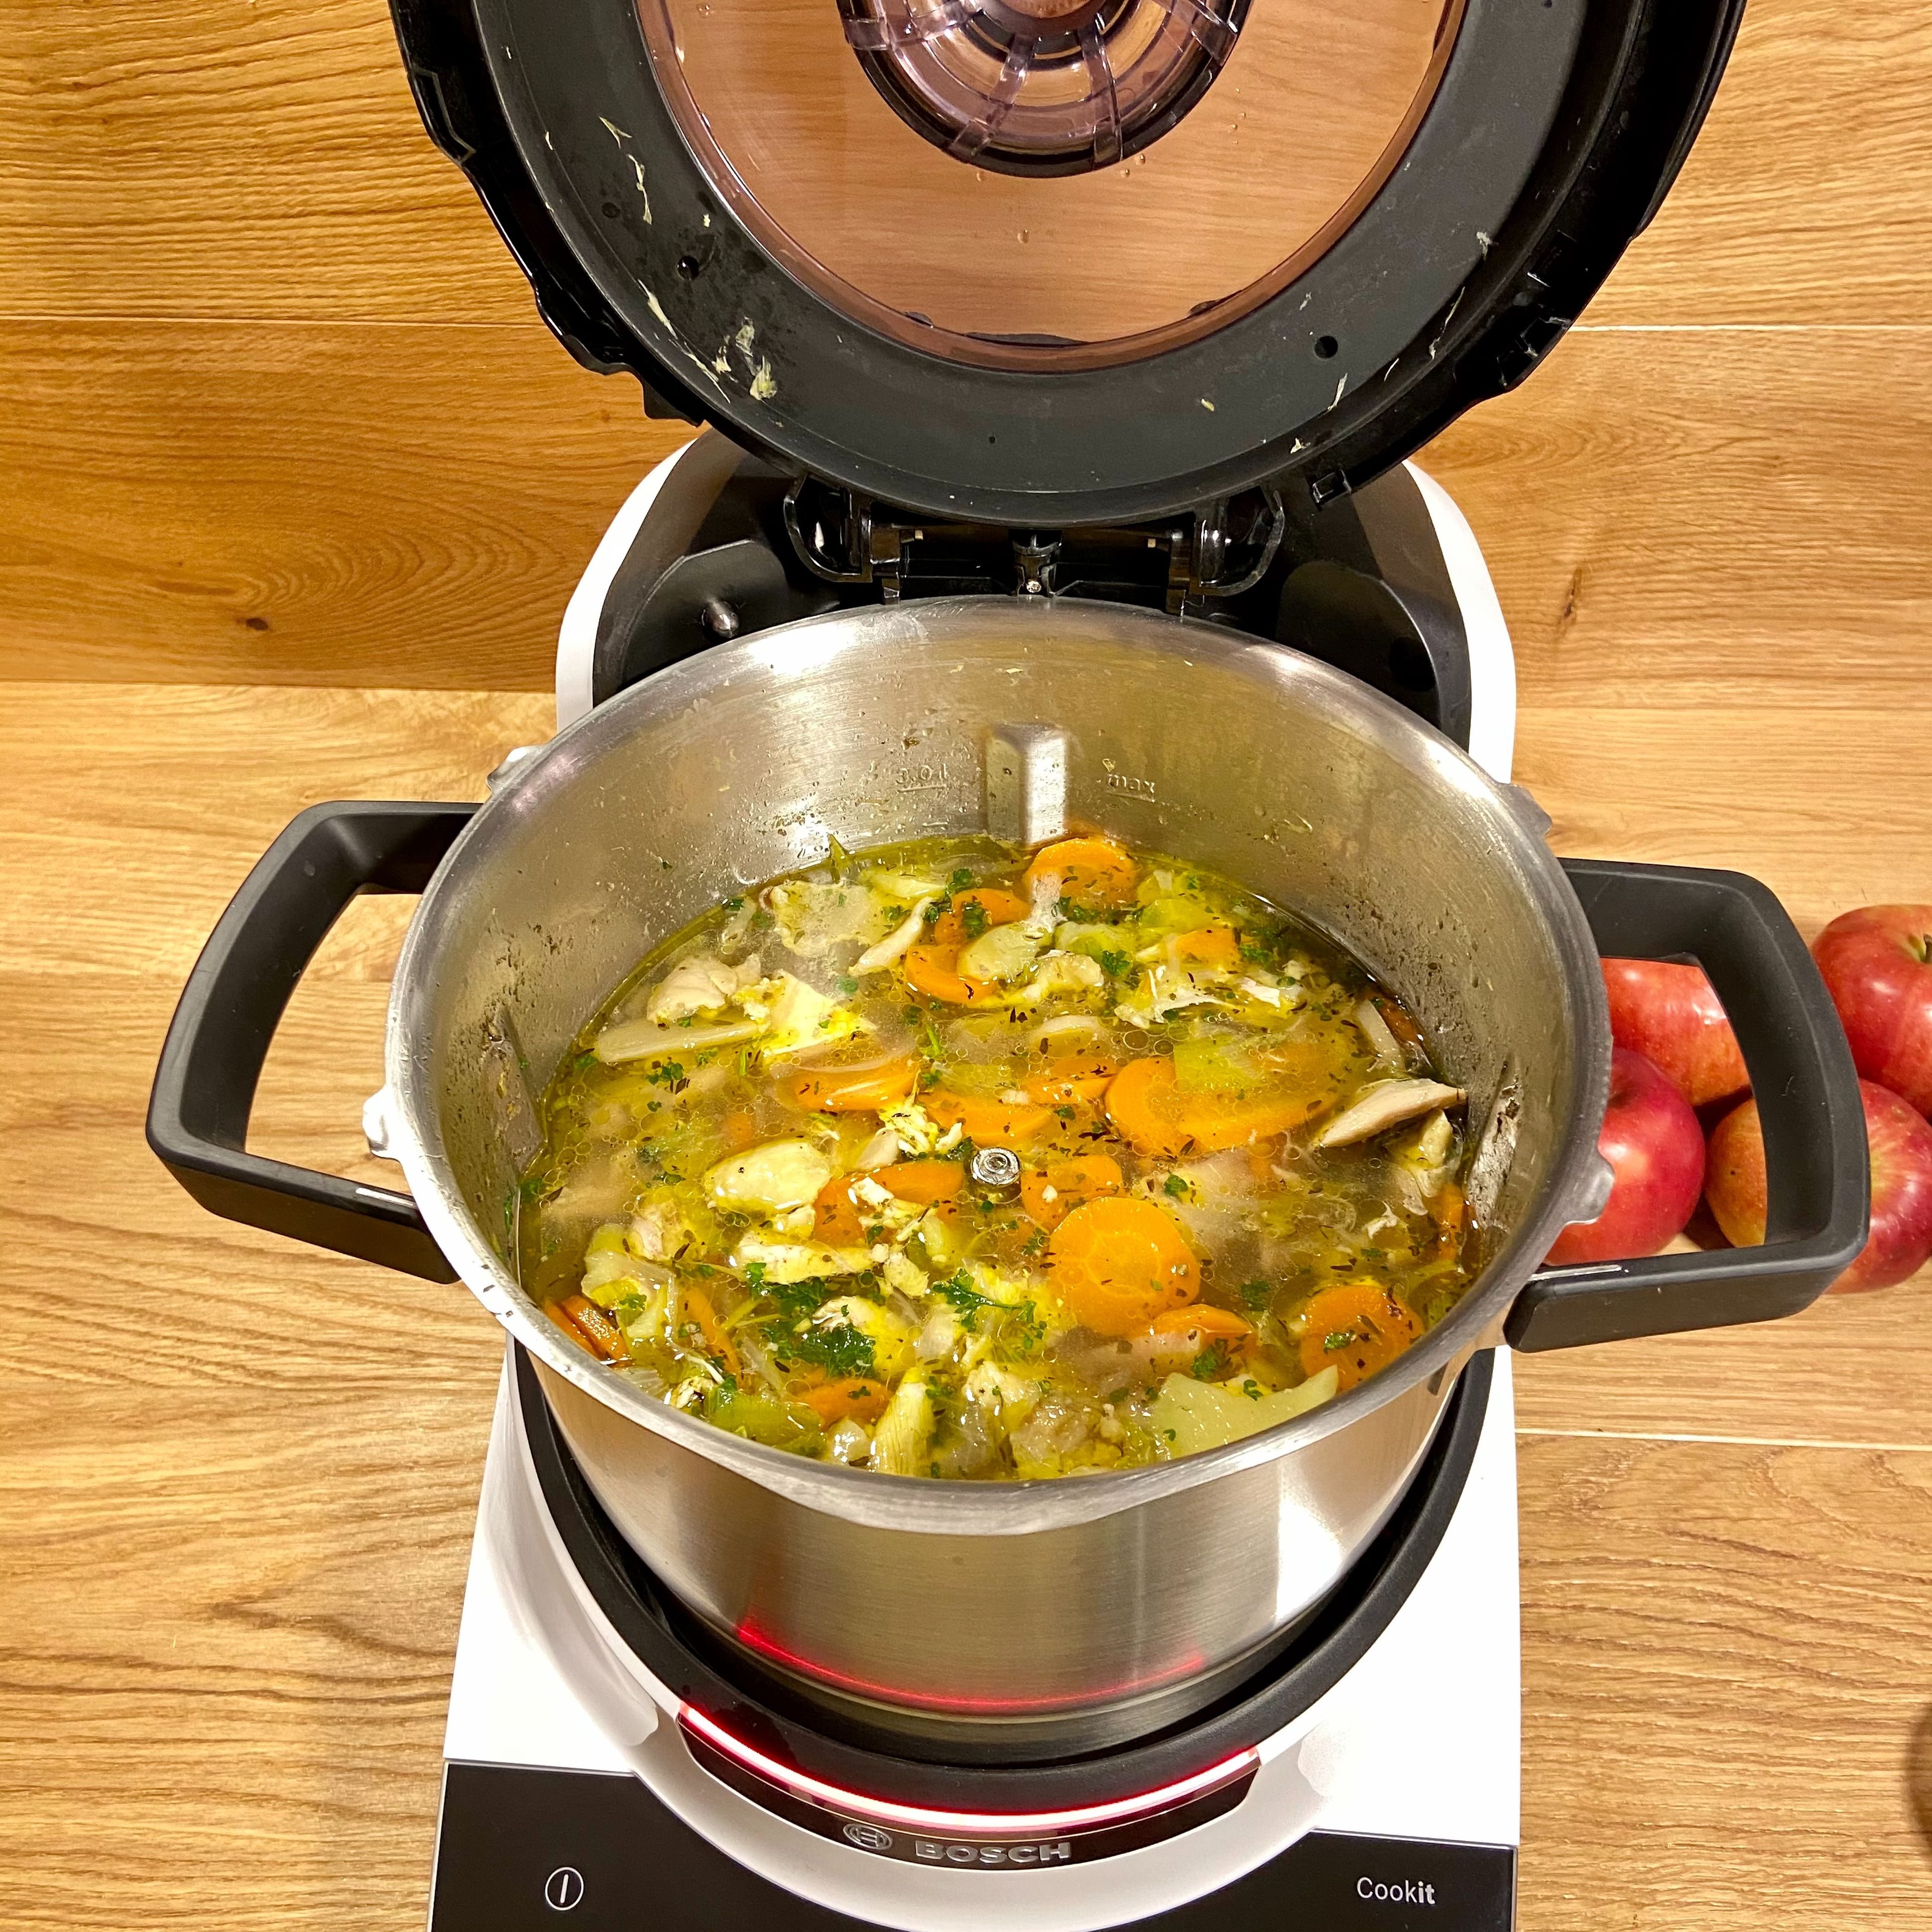 Das Suppenhuhn aus dem Cookit nehmen, abkühlen lassen, in mundgerechte ca. 2-3cm große Stücke zupfen und wieder in die Suppe geben. Dann nochmal für 10 Minuten bei 10 Grad erhitzen.